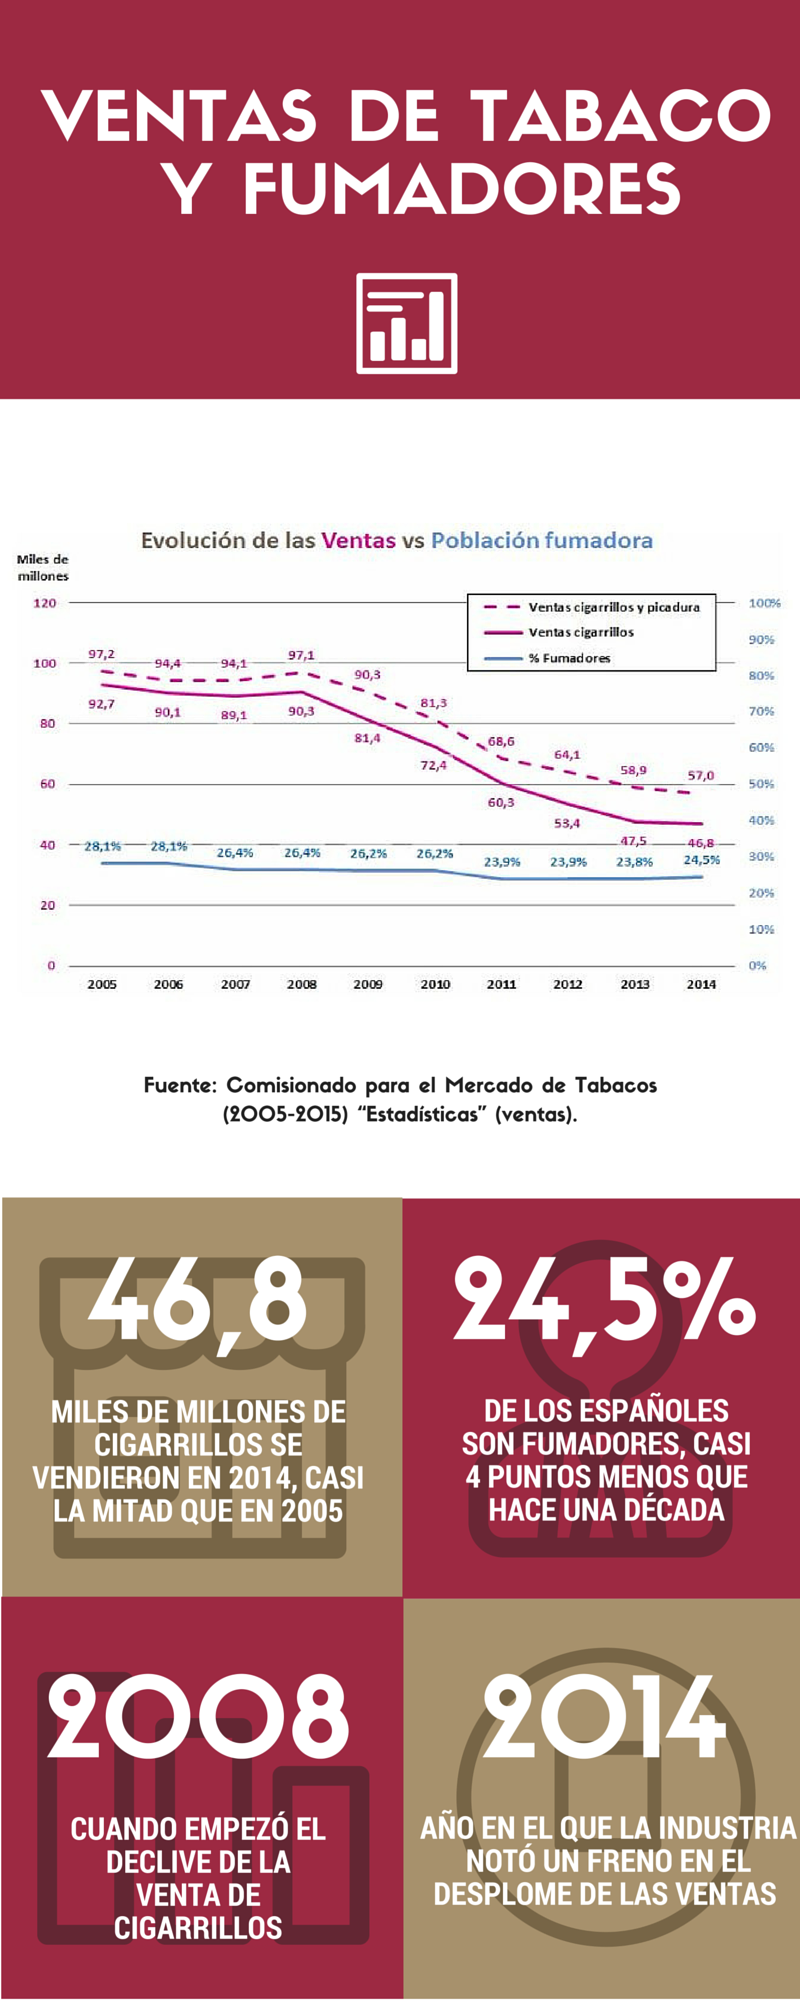 Infografía sobre población fumadora y ventas de tabaco en España